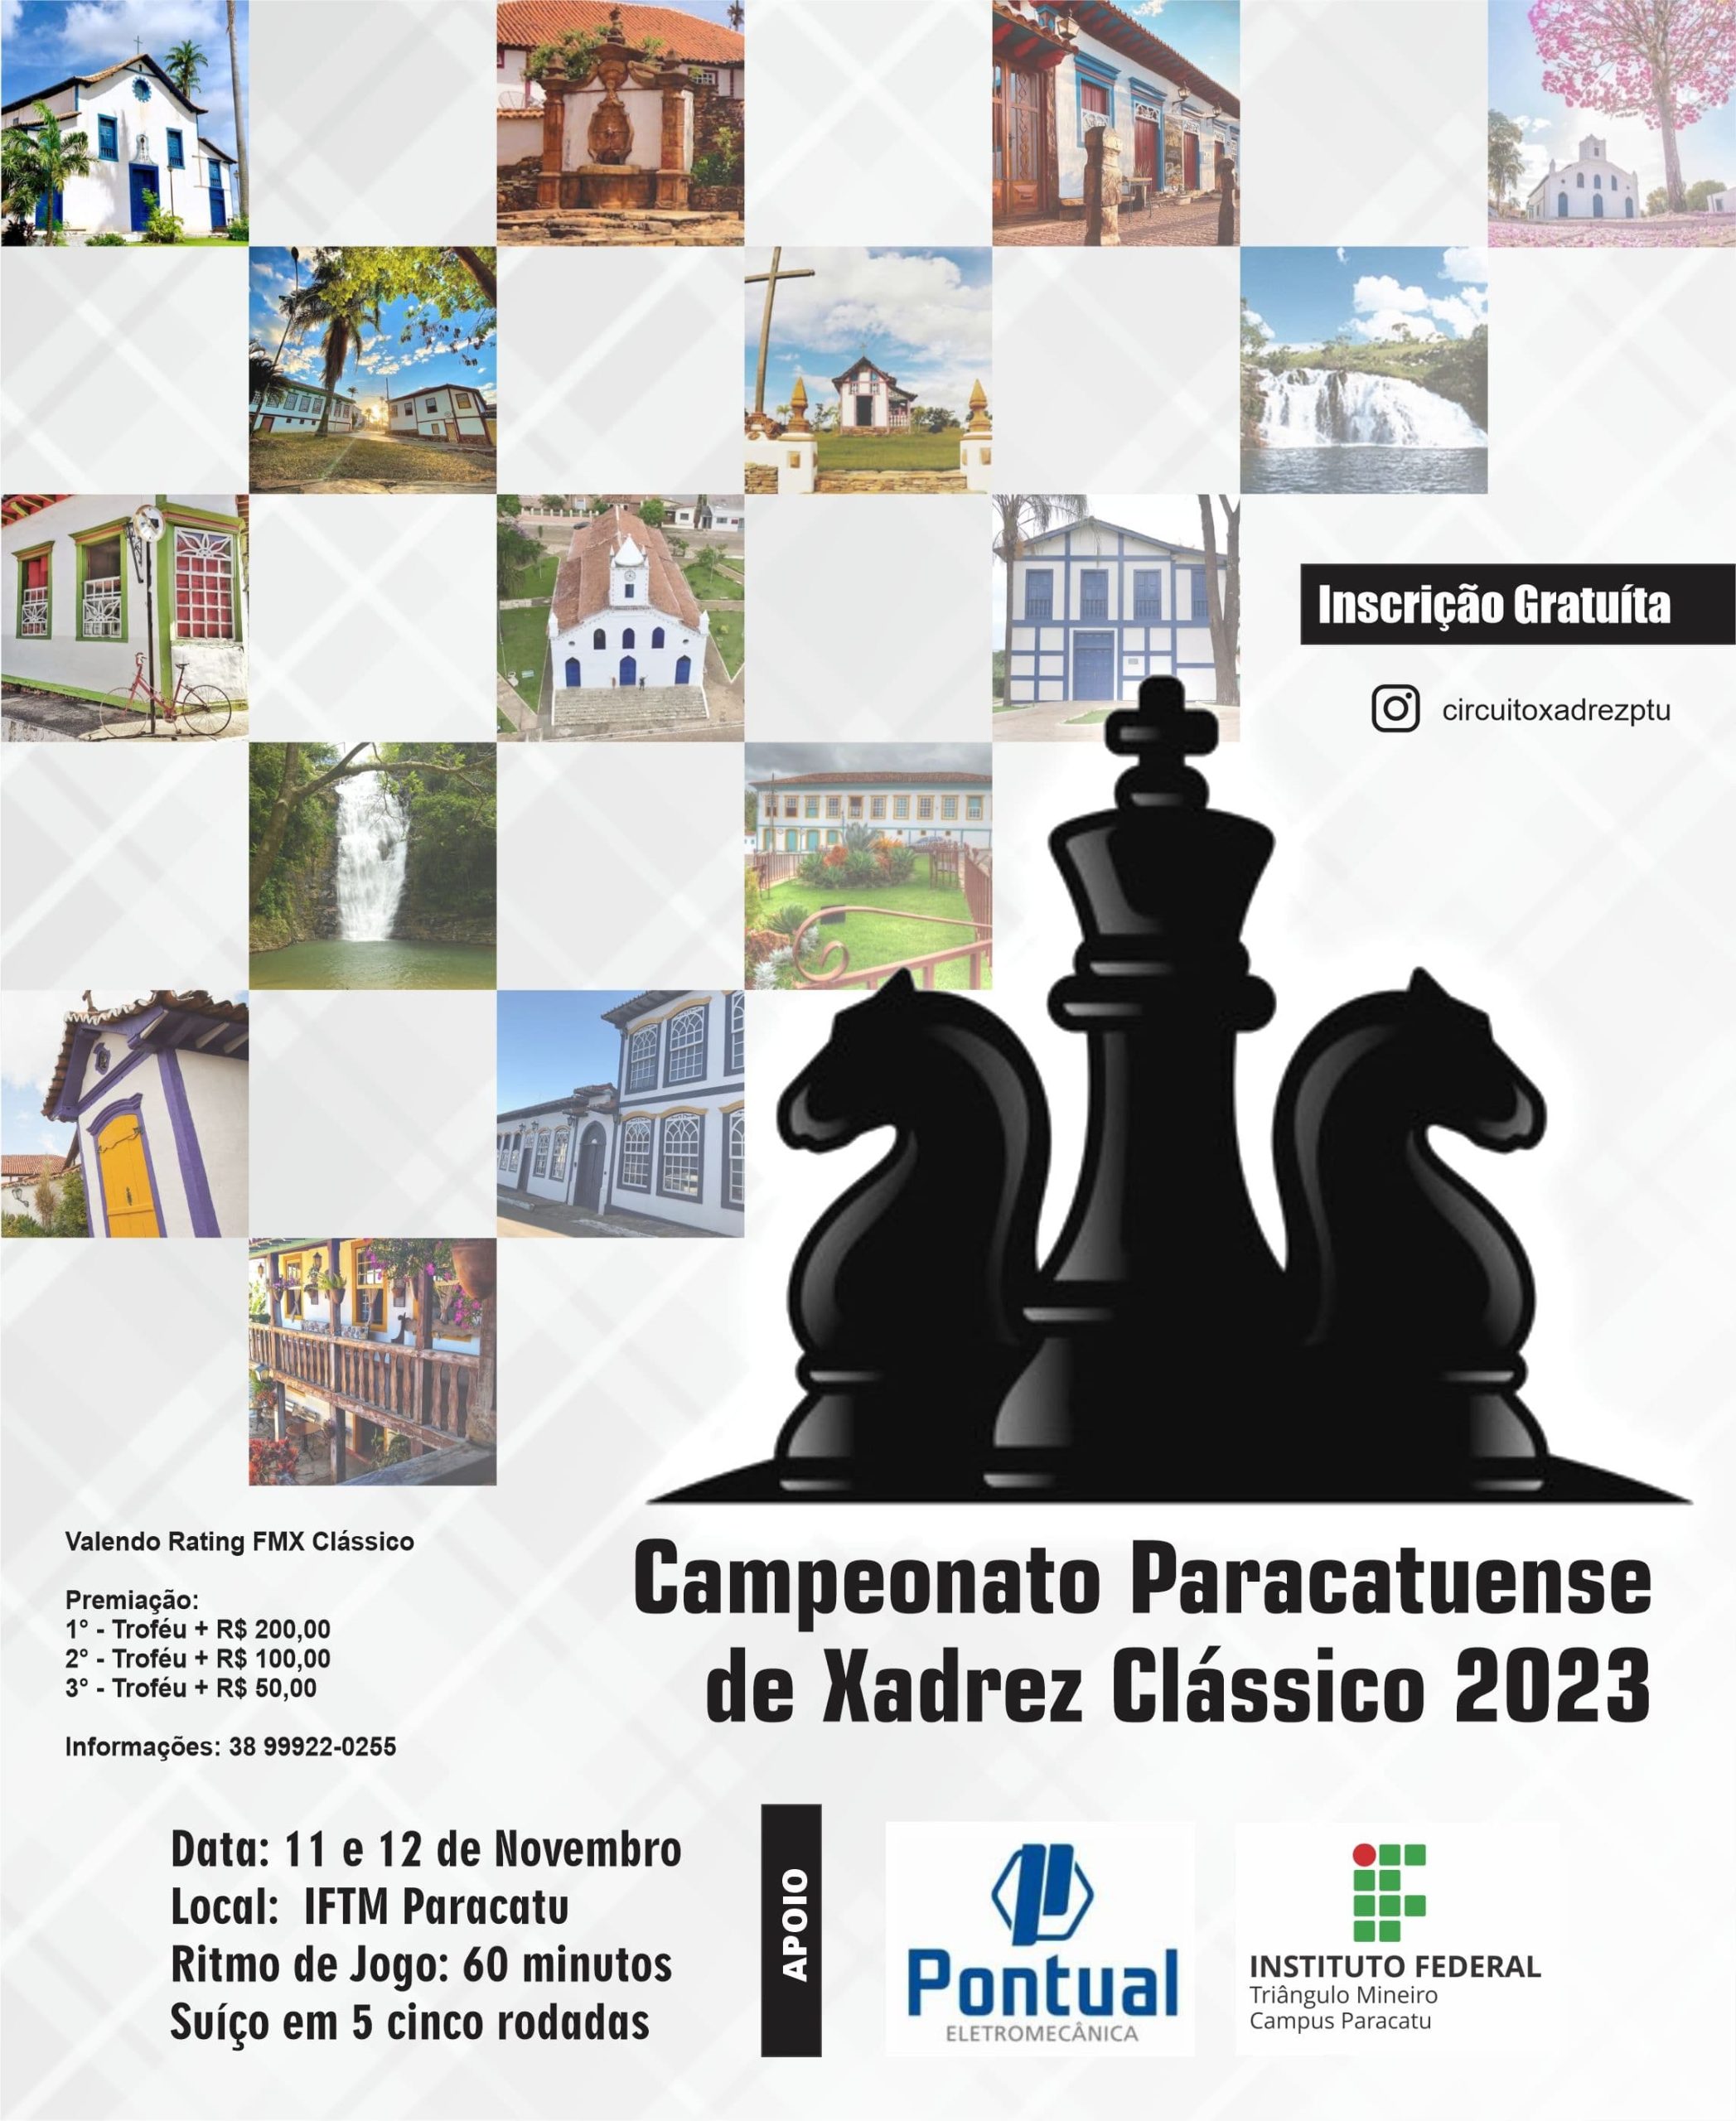 24/07/2022 – Circuito Paracatuense de Xadrez Rápido (Paracatu/MG) – FMX